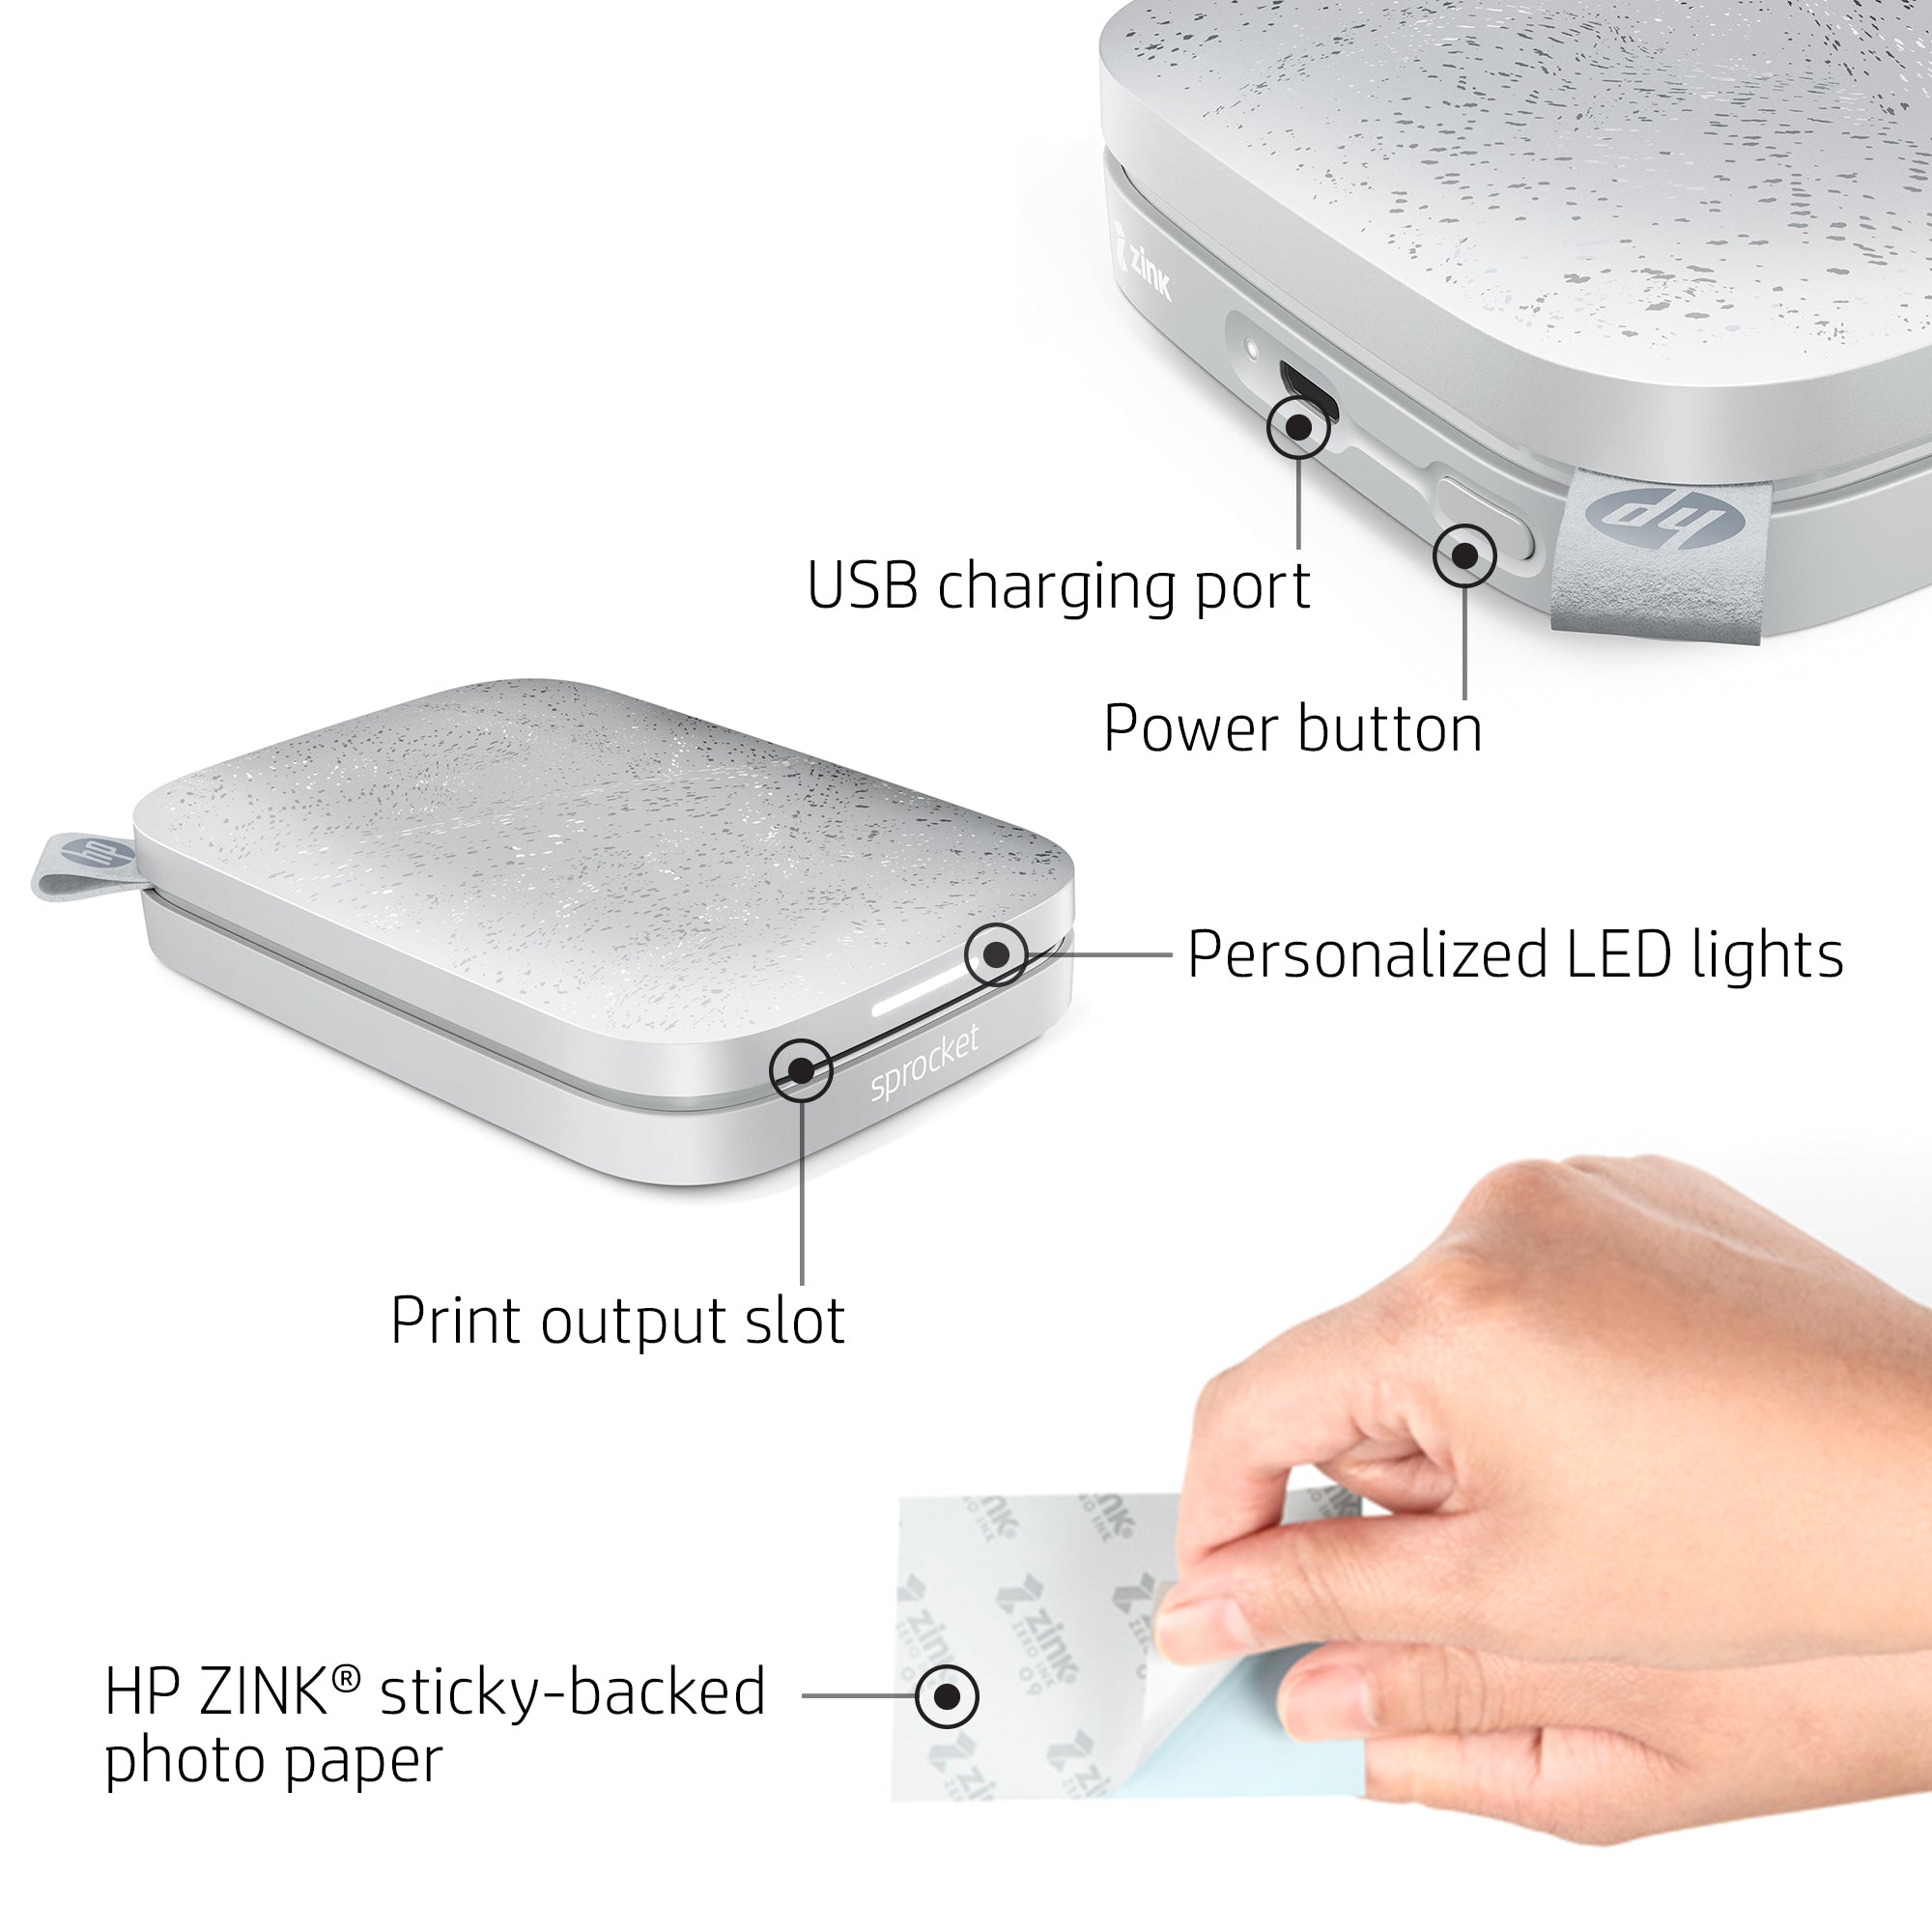 Imprimante photo instantanée portable HP Sprocket - 2 x 3 lilas